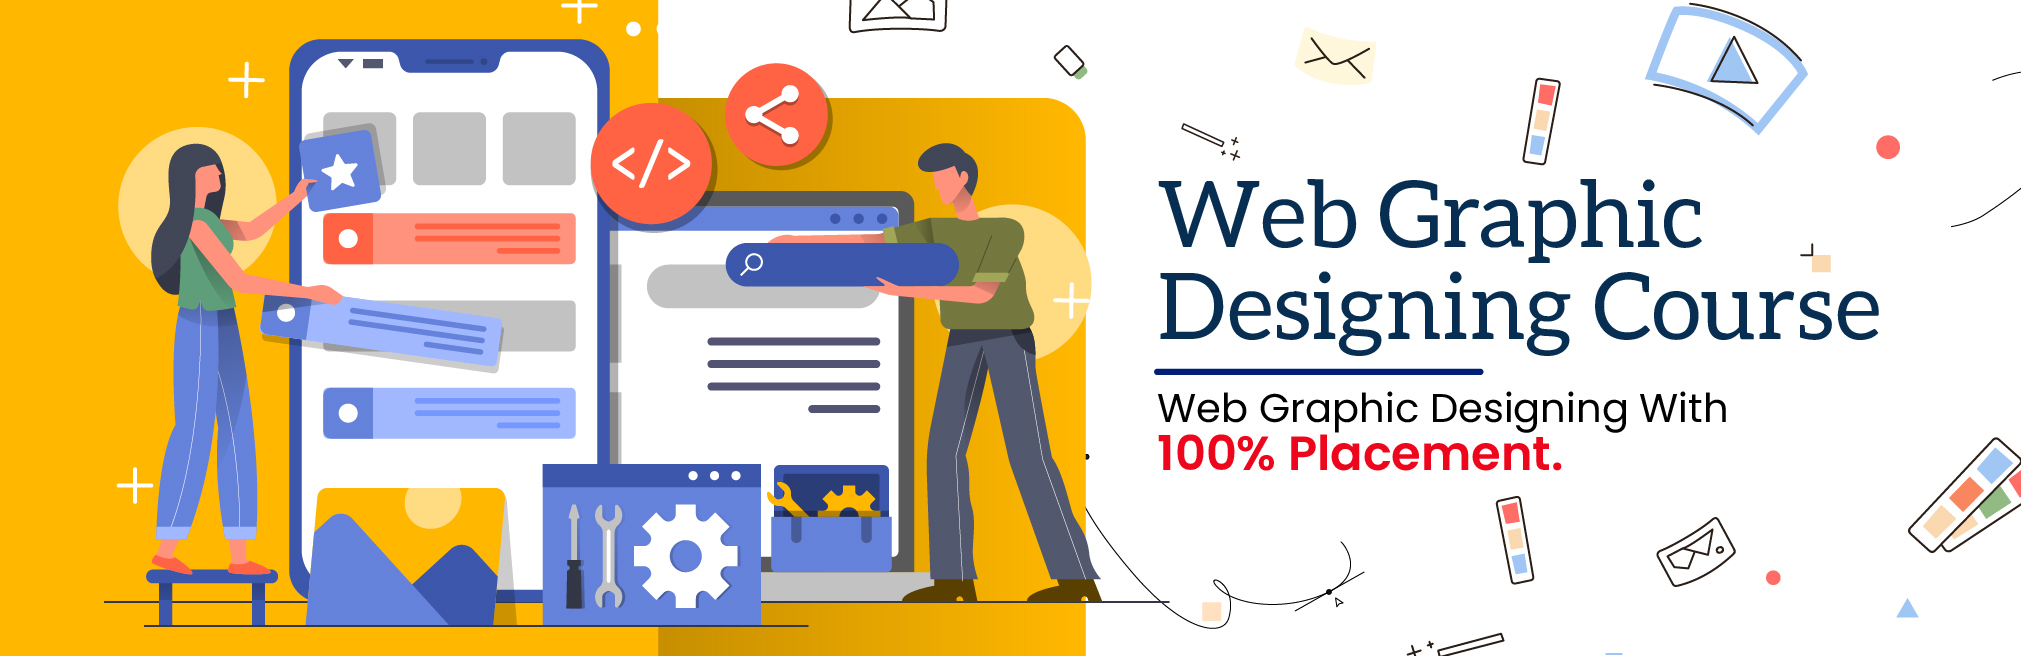 Web Graphic Designing